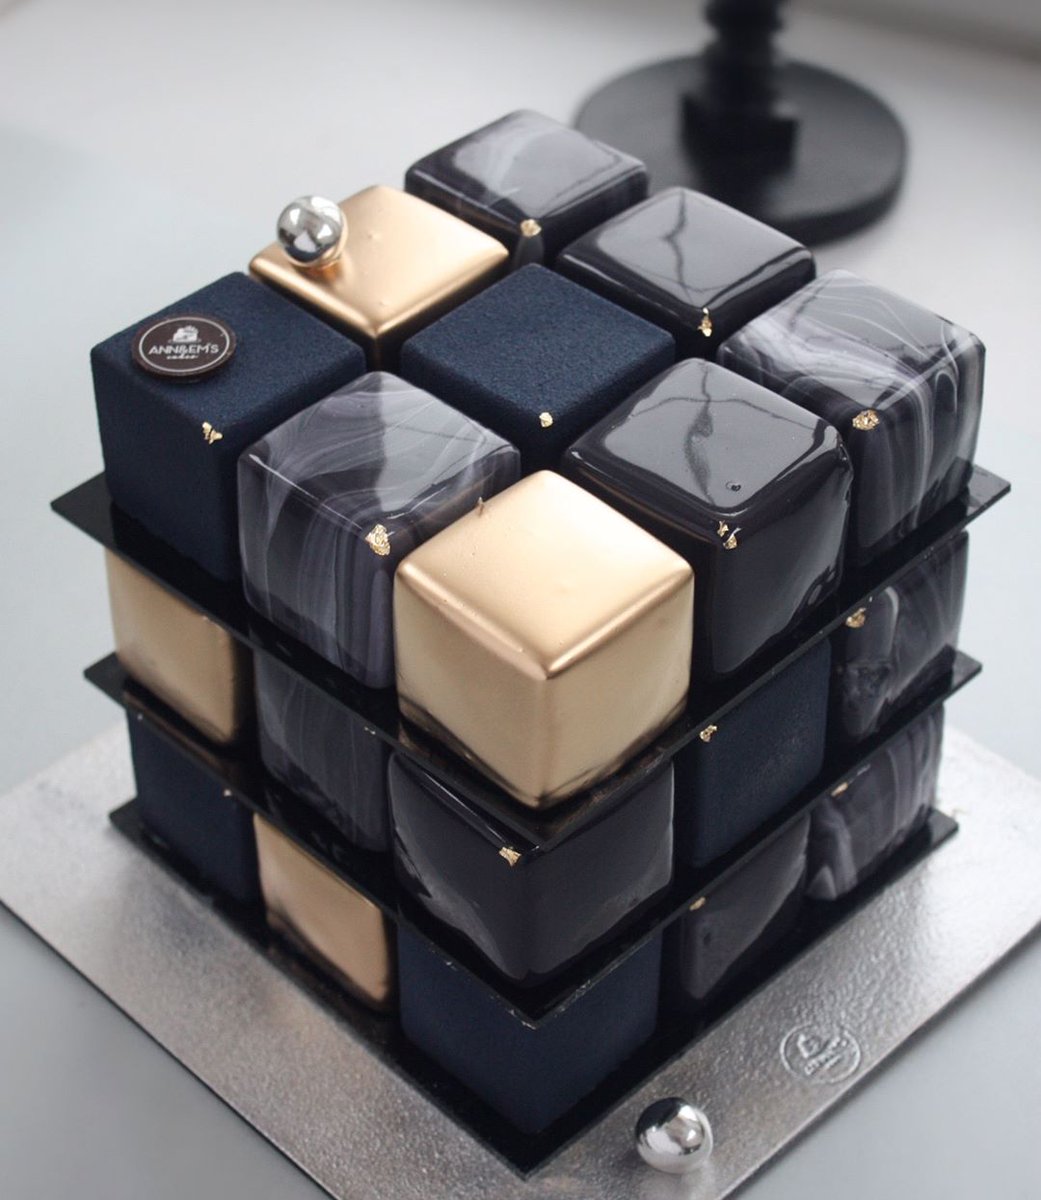 Муссовое пирожное кубик рубик